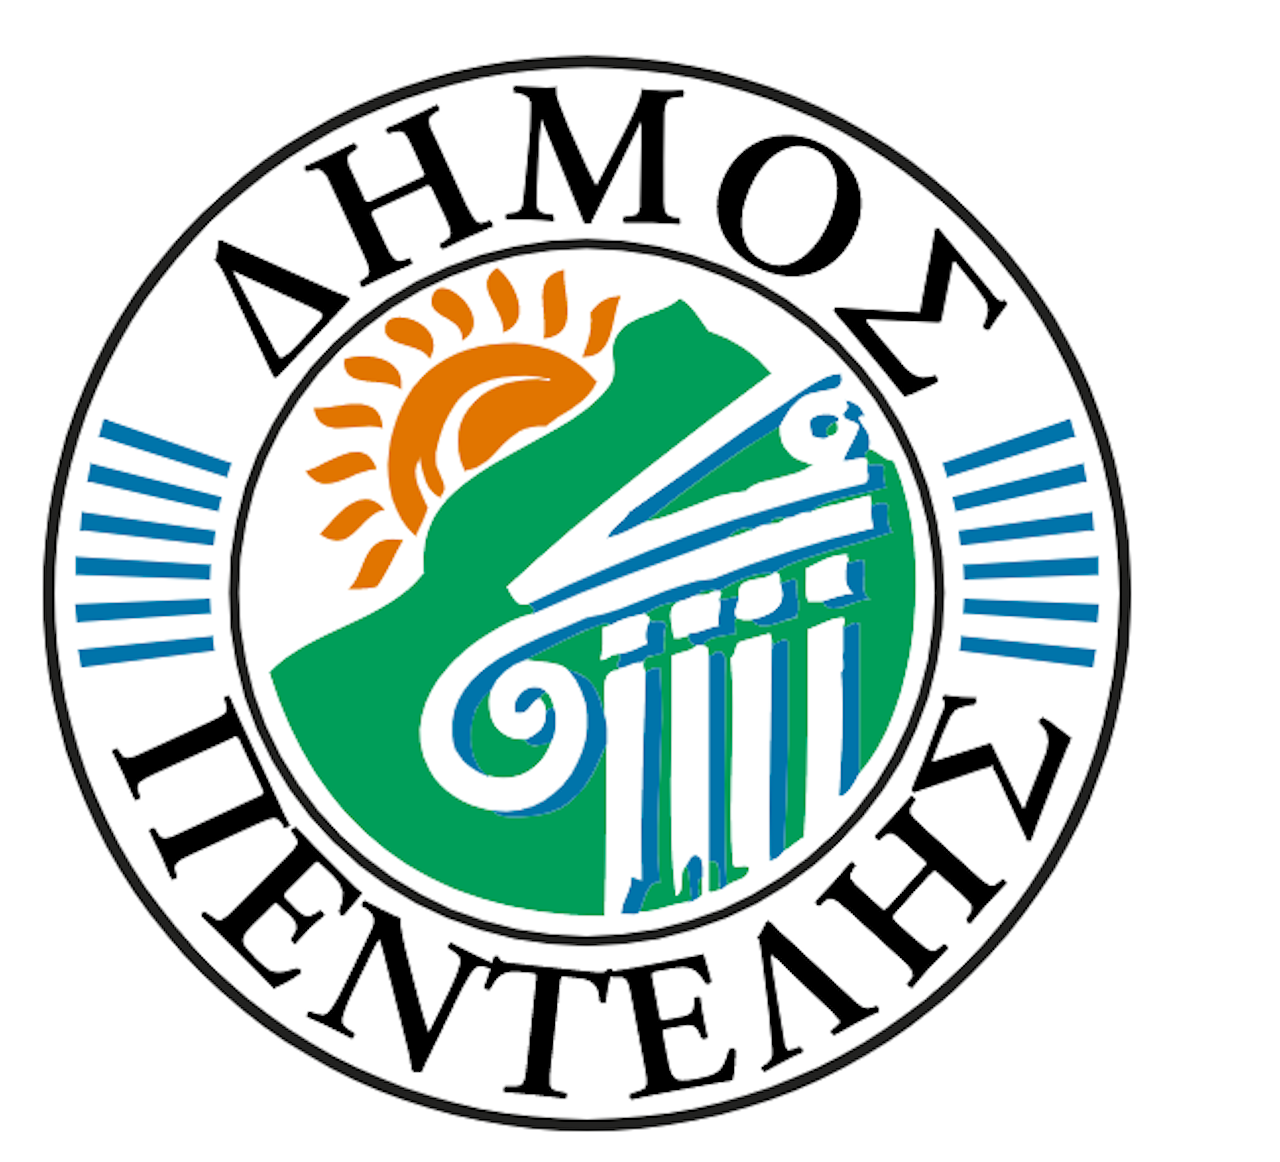 Δήμος Πεντέλης Logo - Πηγή: Δήμος Πεντέλης